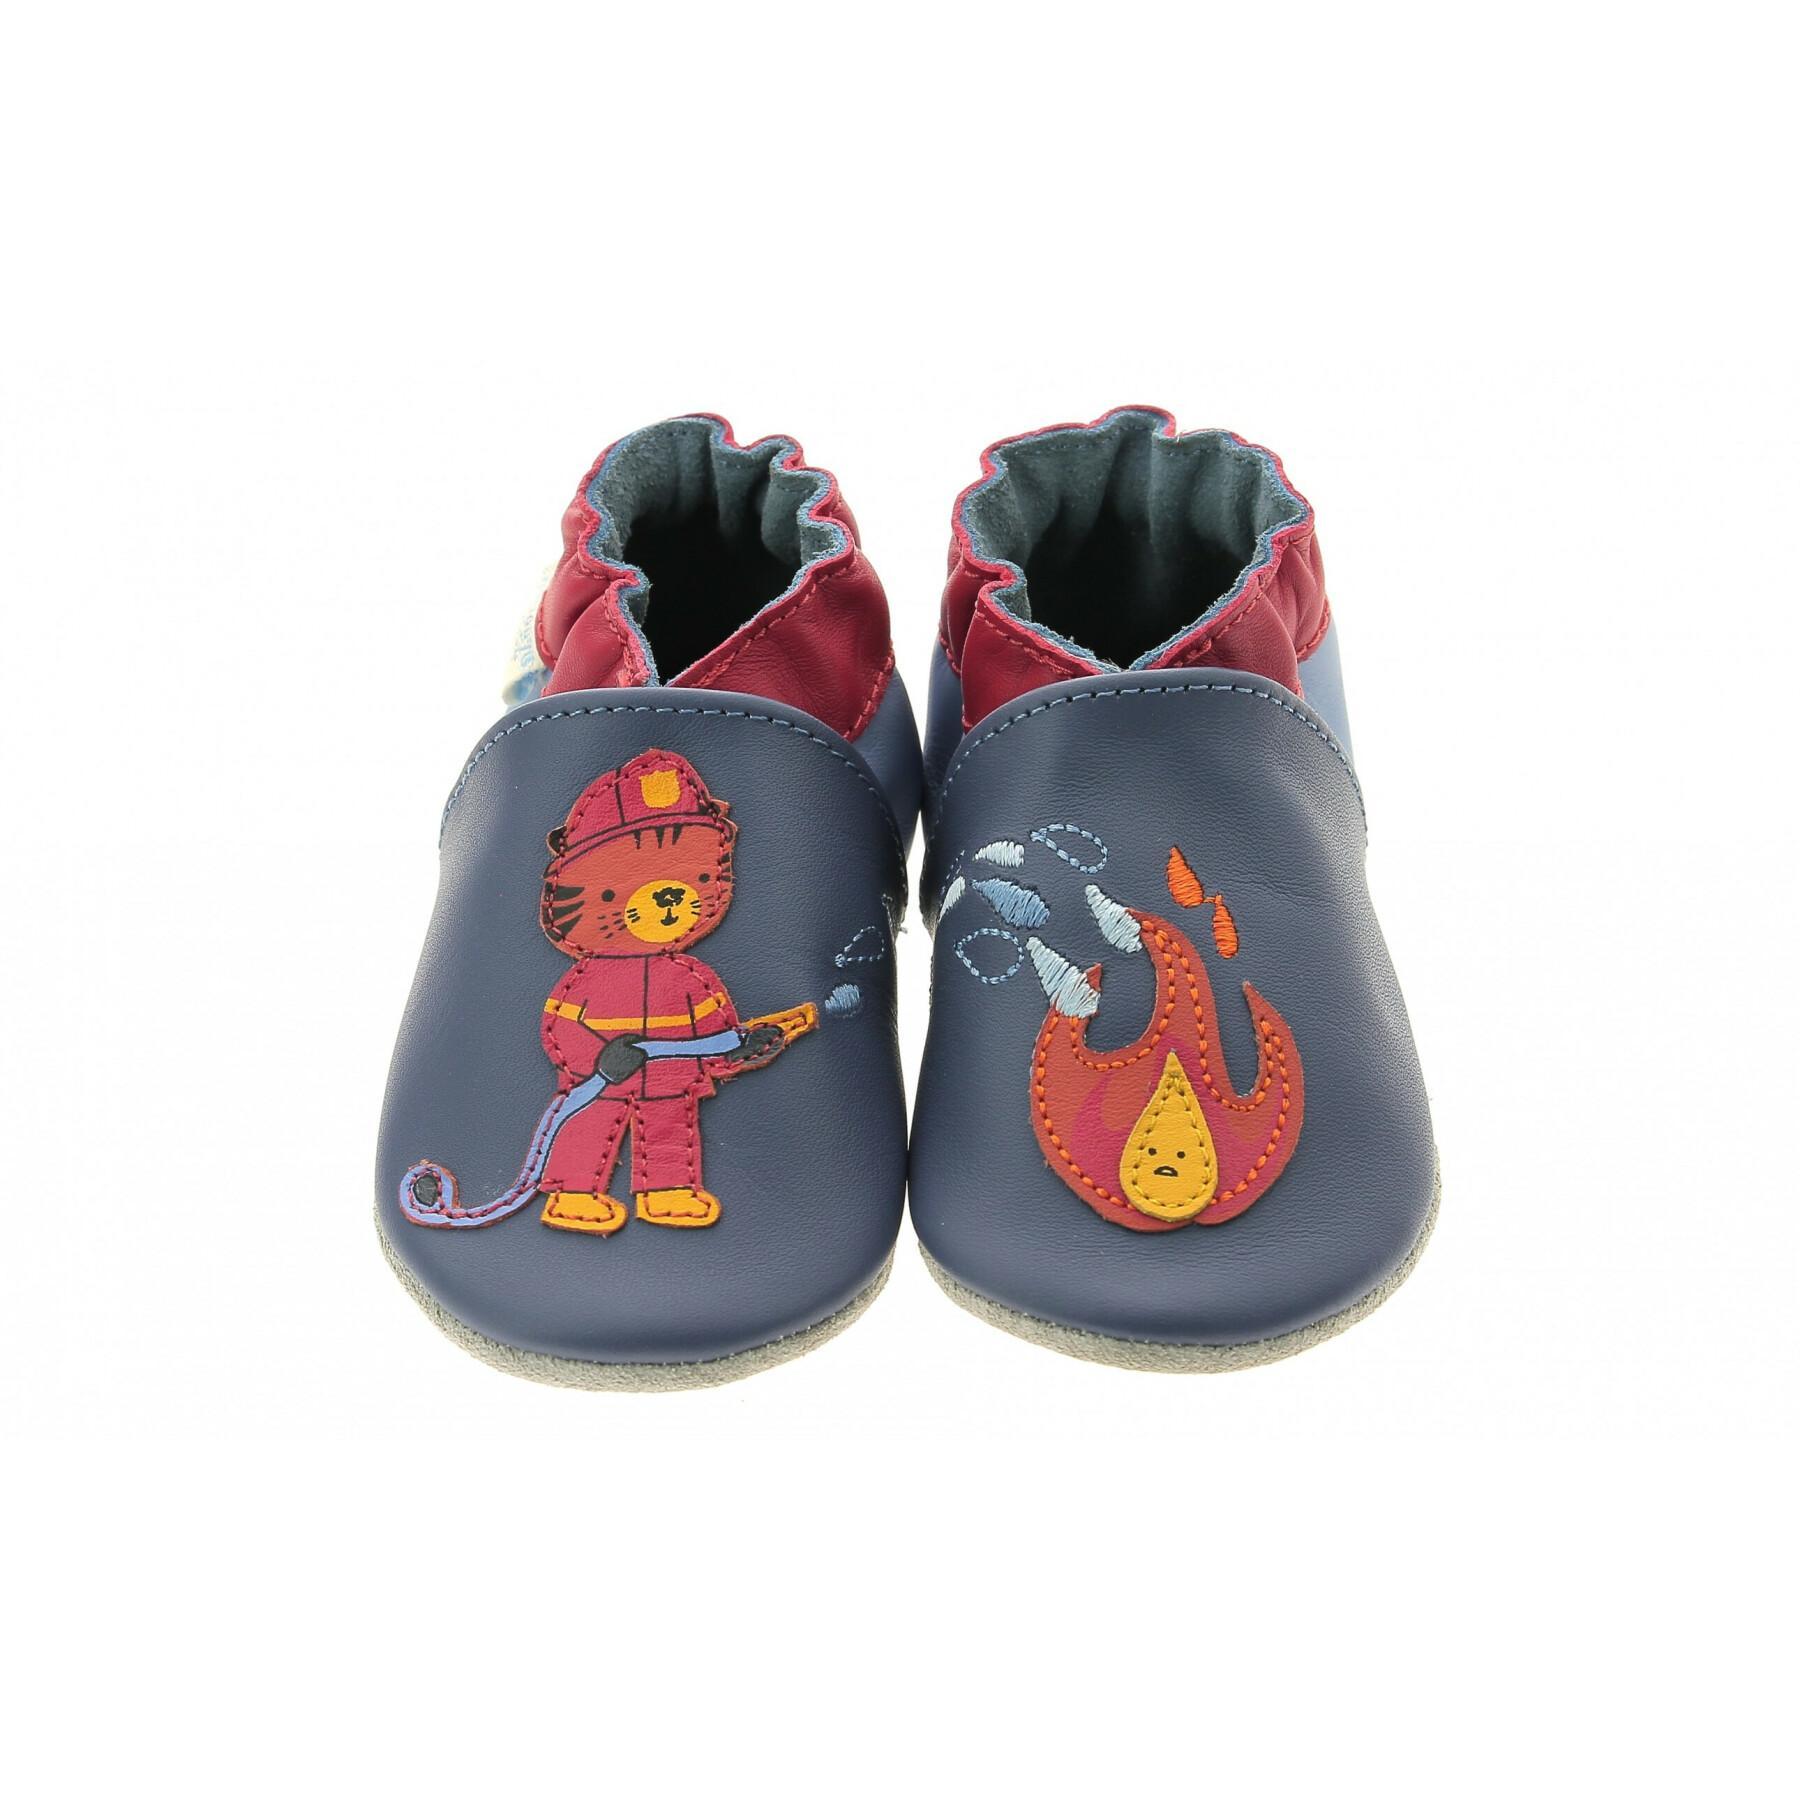 Chaussures bébé garçon Robeez Fire Control